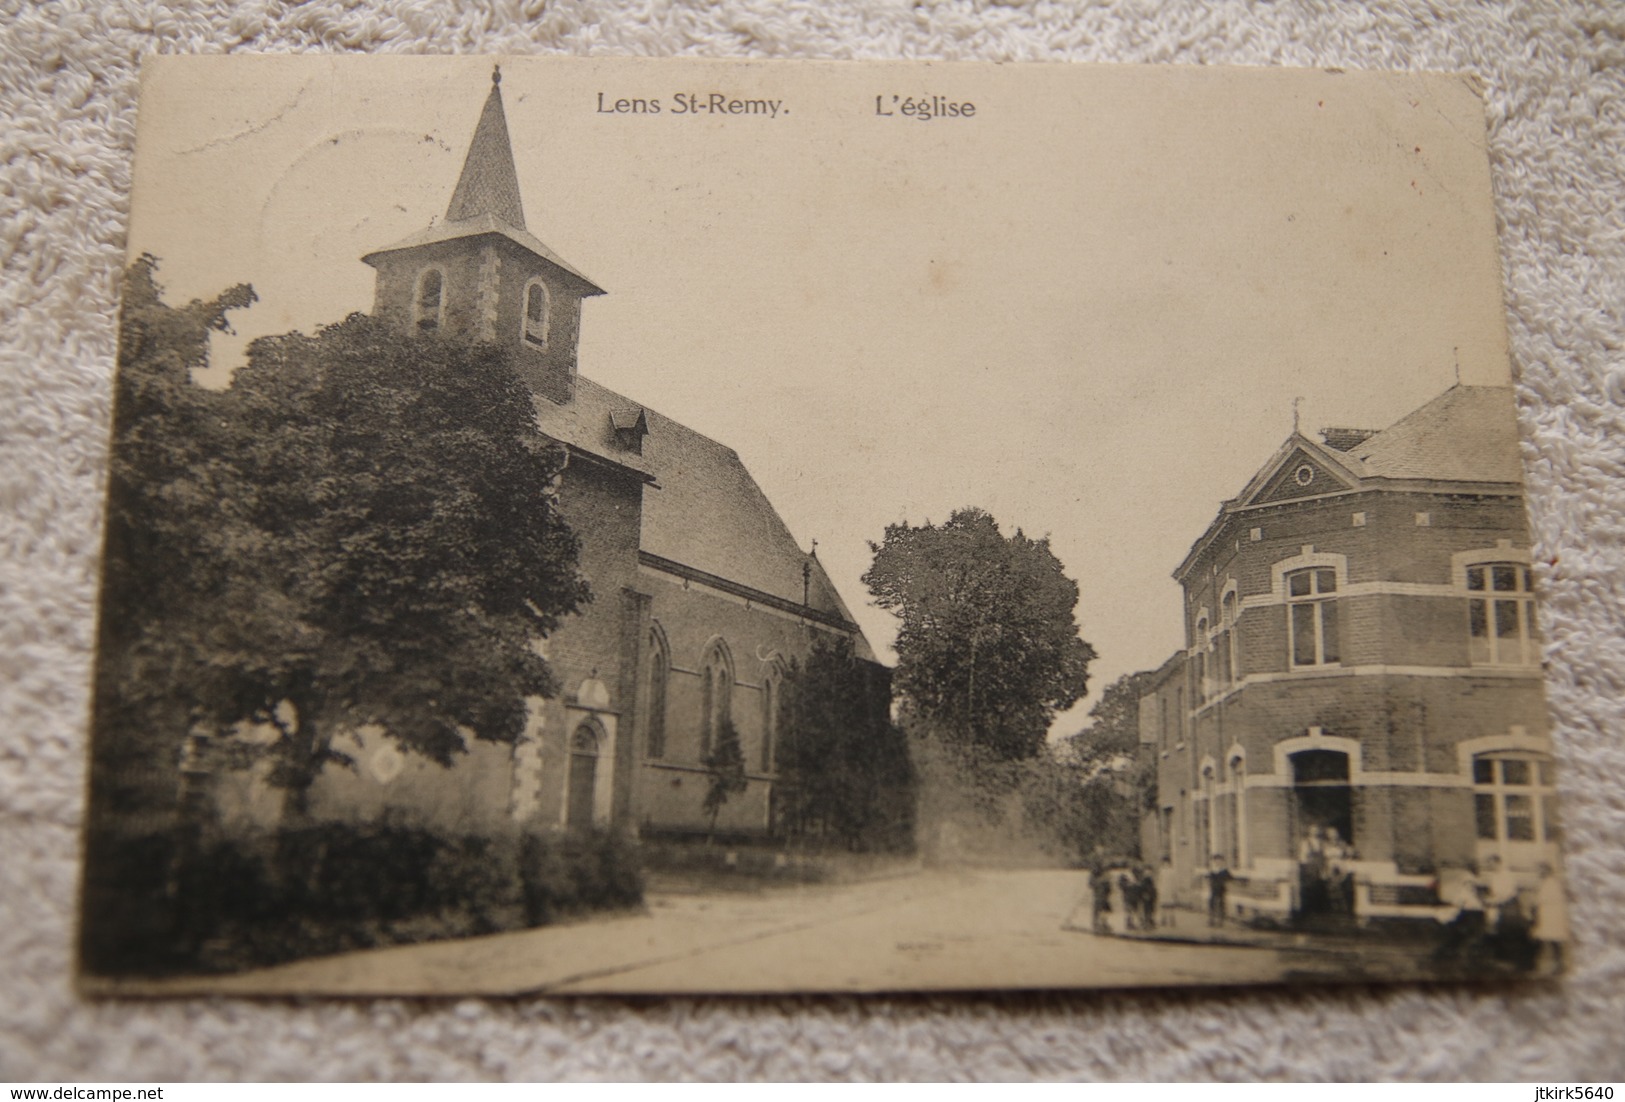 Lens St-Remy "L'église" - Hannuit